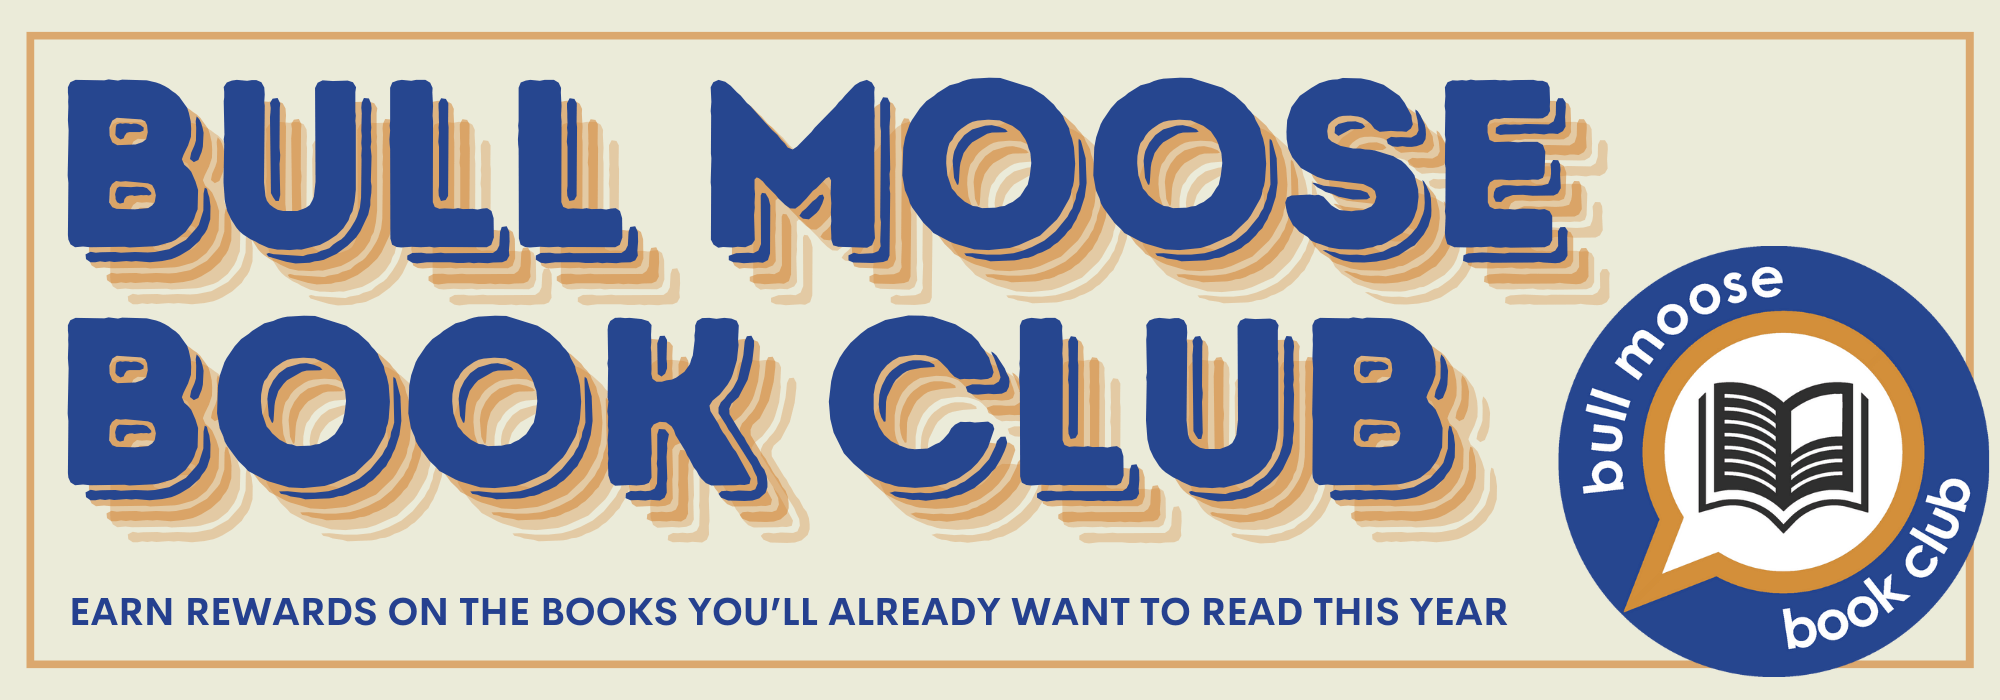 Bull Moose Book Club